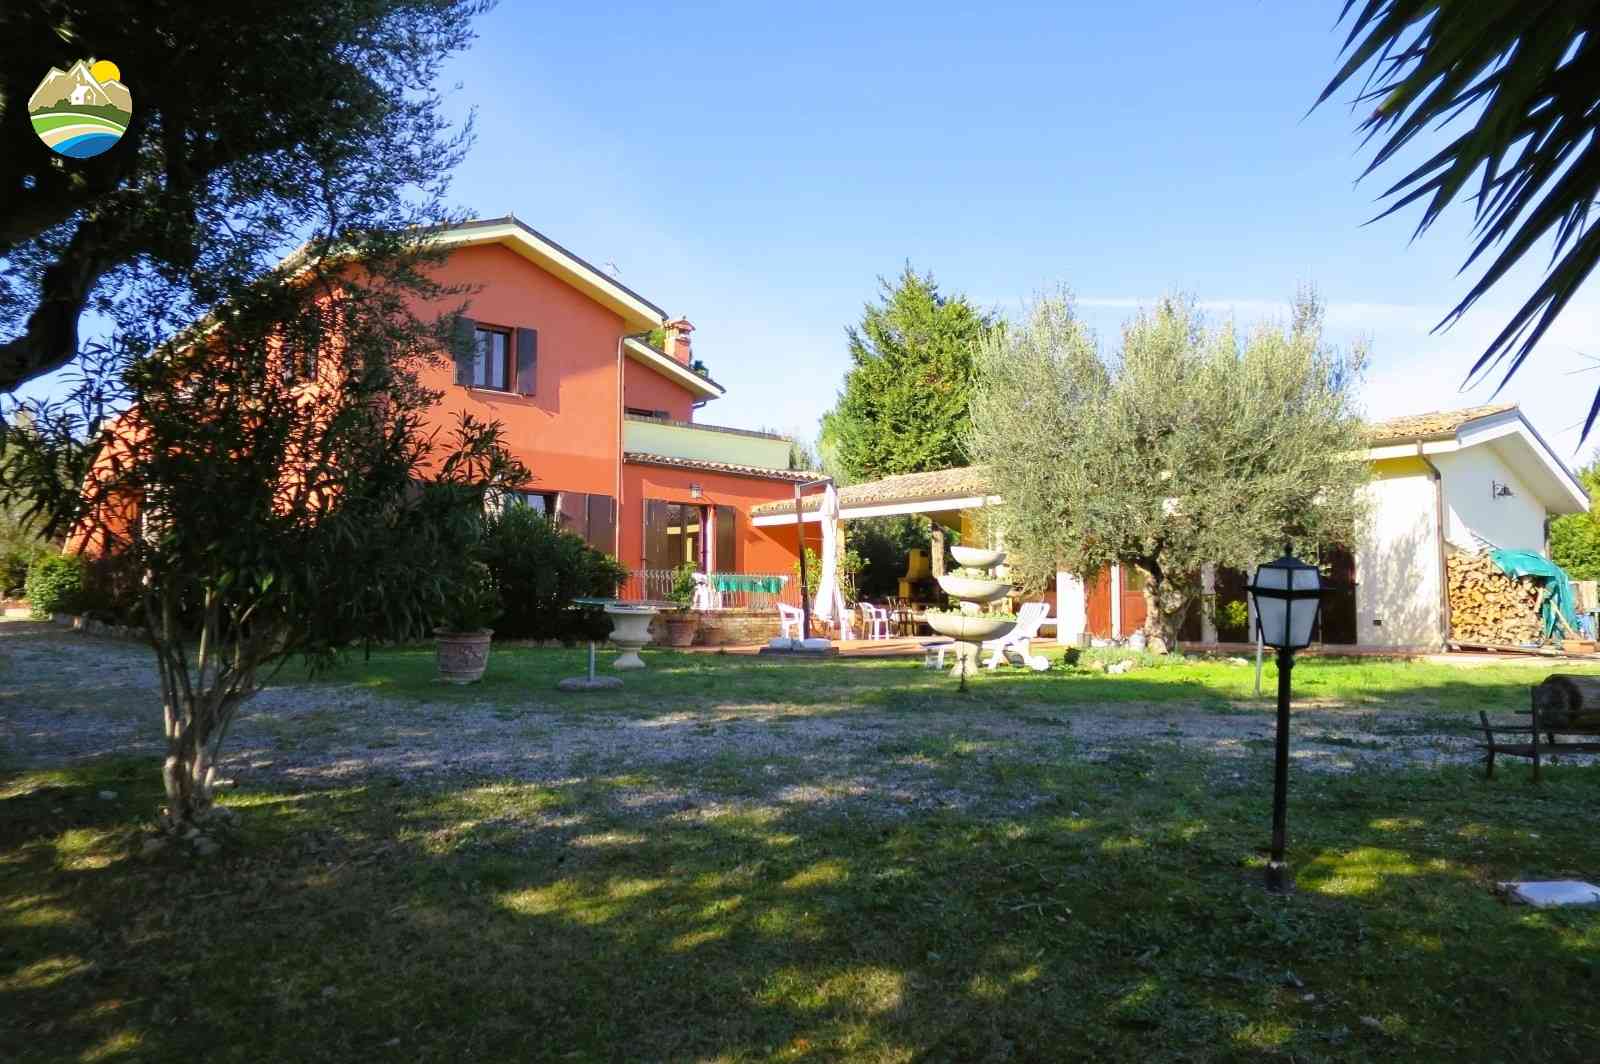 Country Houses Country Houses for sale Bellante (TE), Casale La Vignola - Bellante - EUR 524.401 950